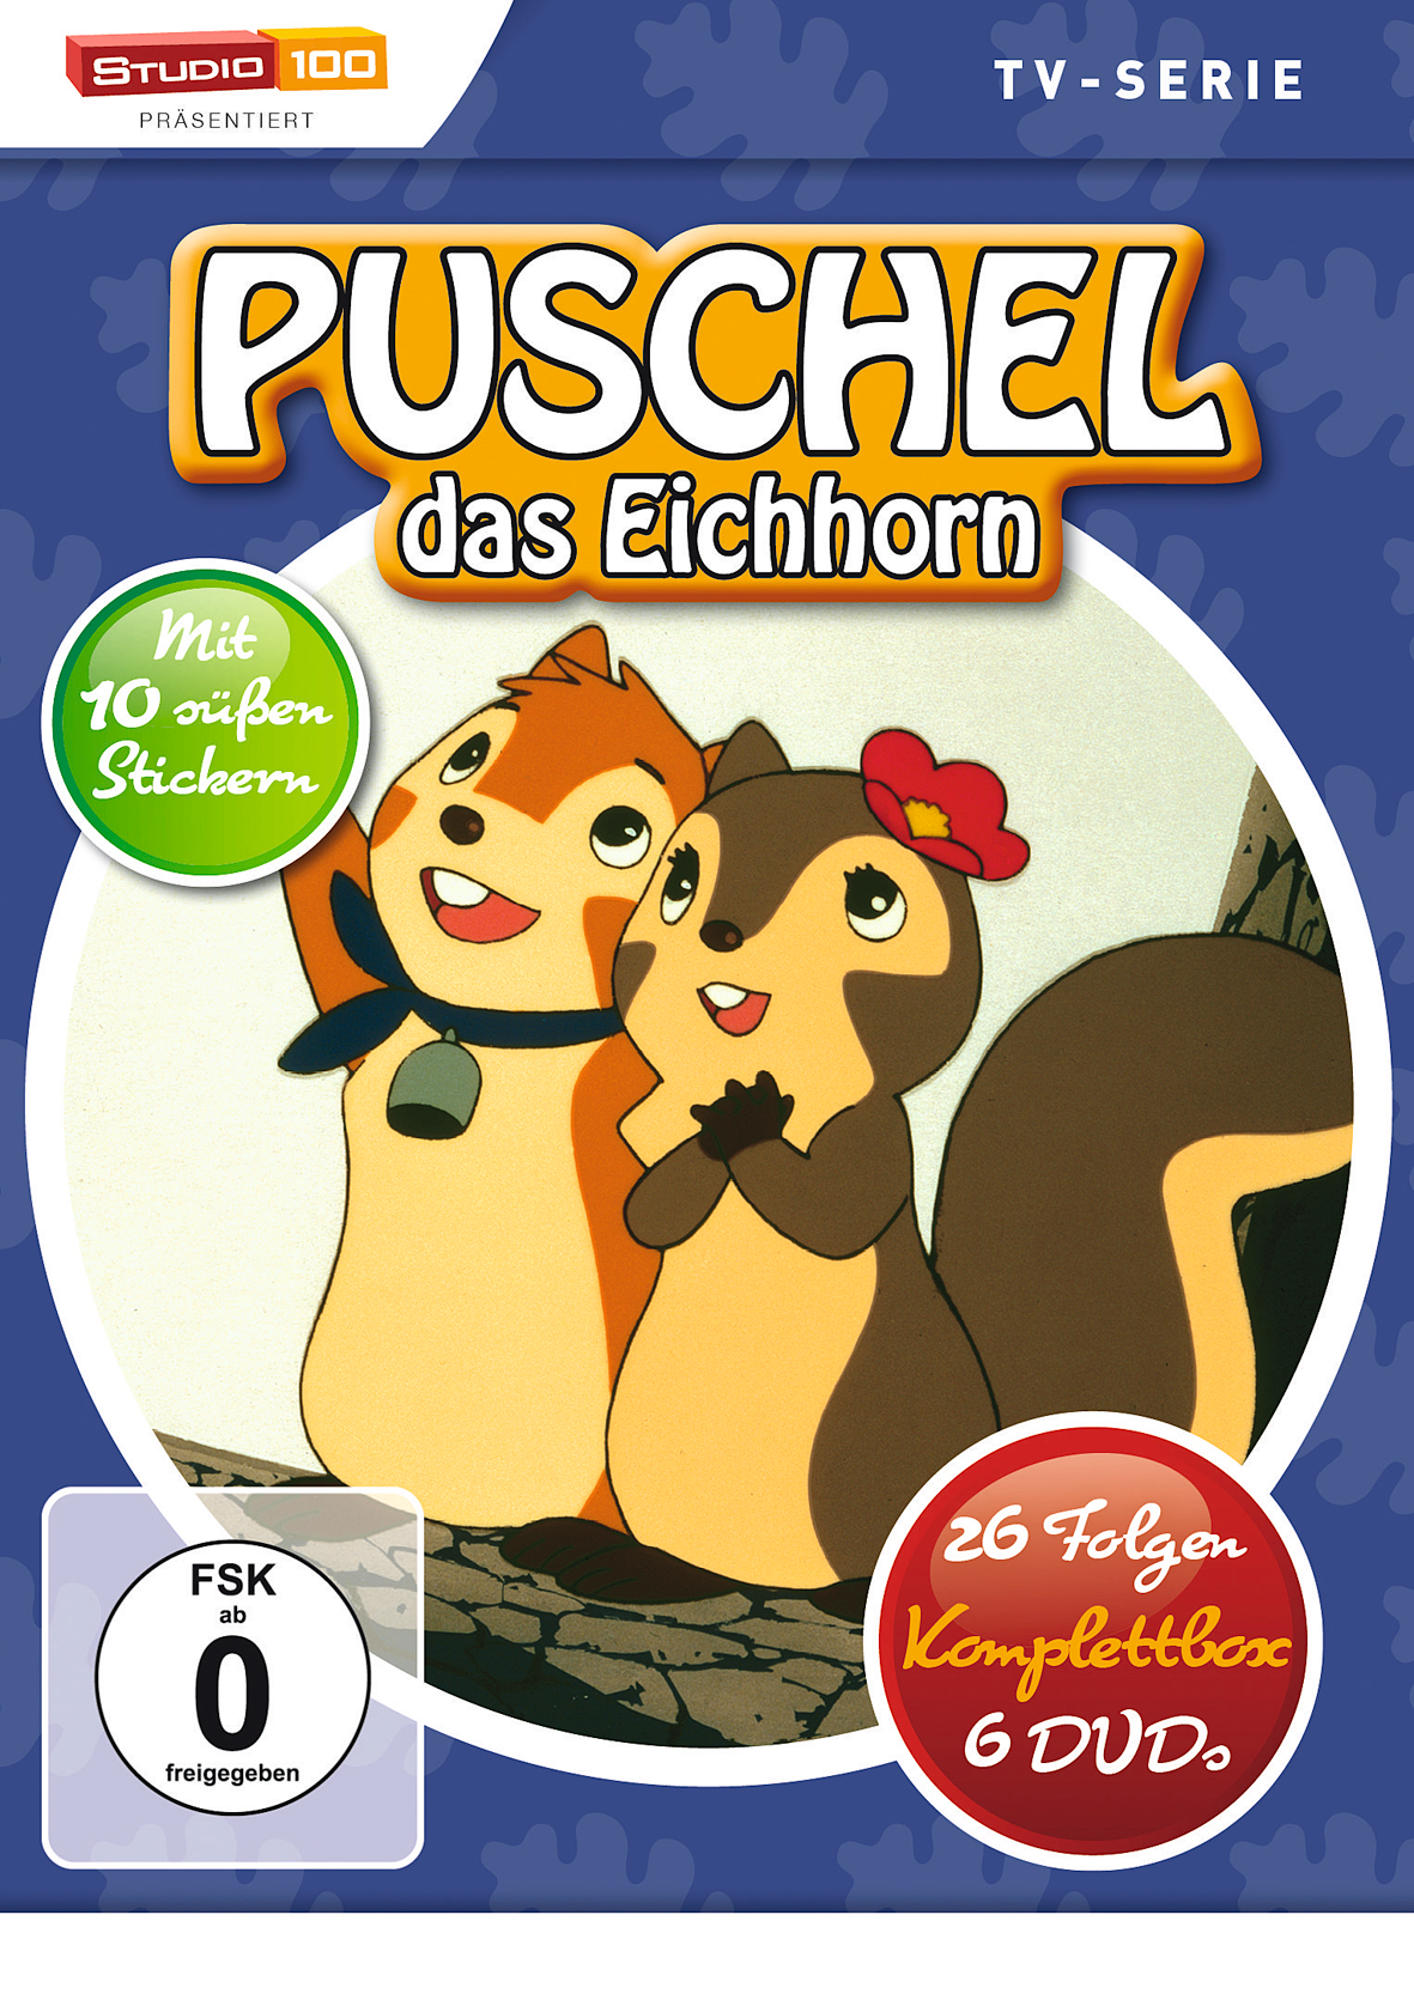 - 1 DVD Eichhorn - das 6 DVD Puschel,